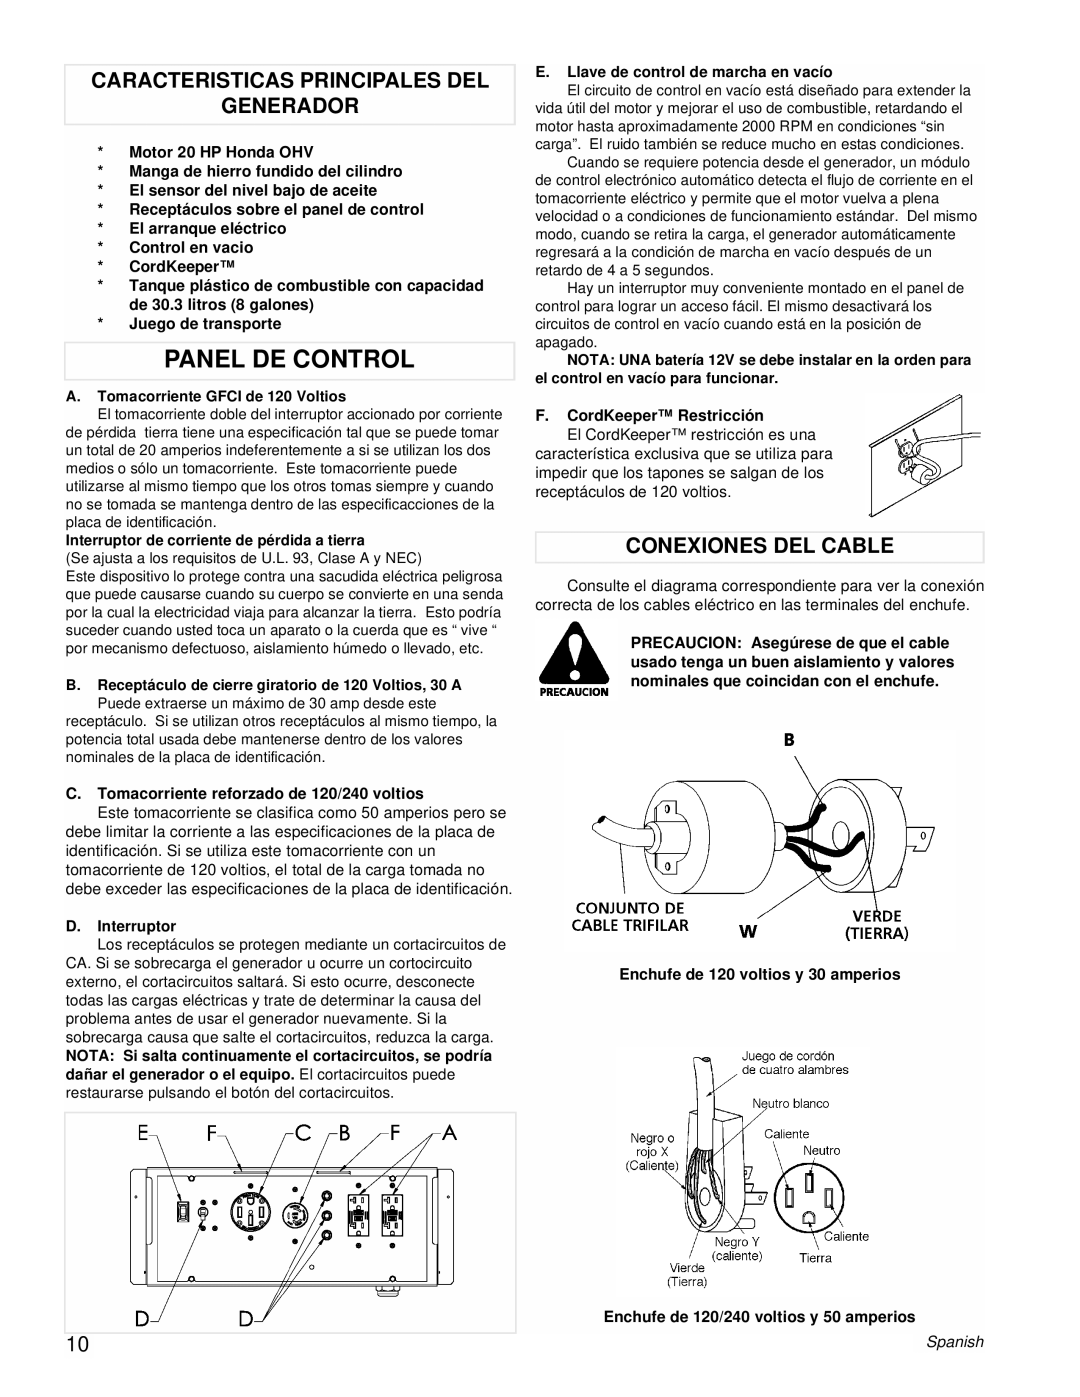 Powermate PM0601101 manual Panel DE Control, Caracteristicas Principales DEL Generador, Conexiones DEL Cable 